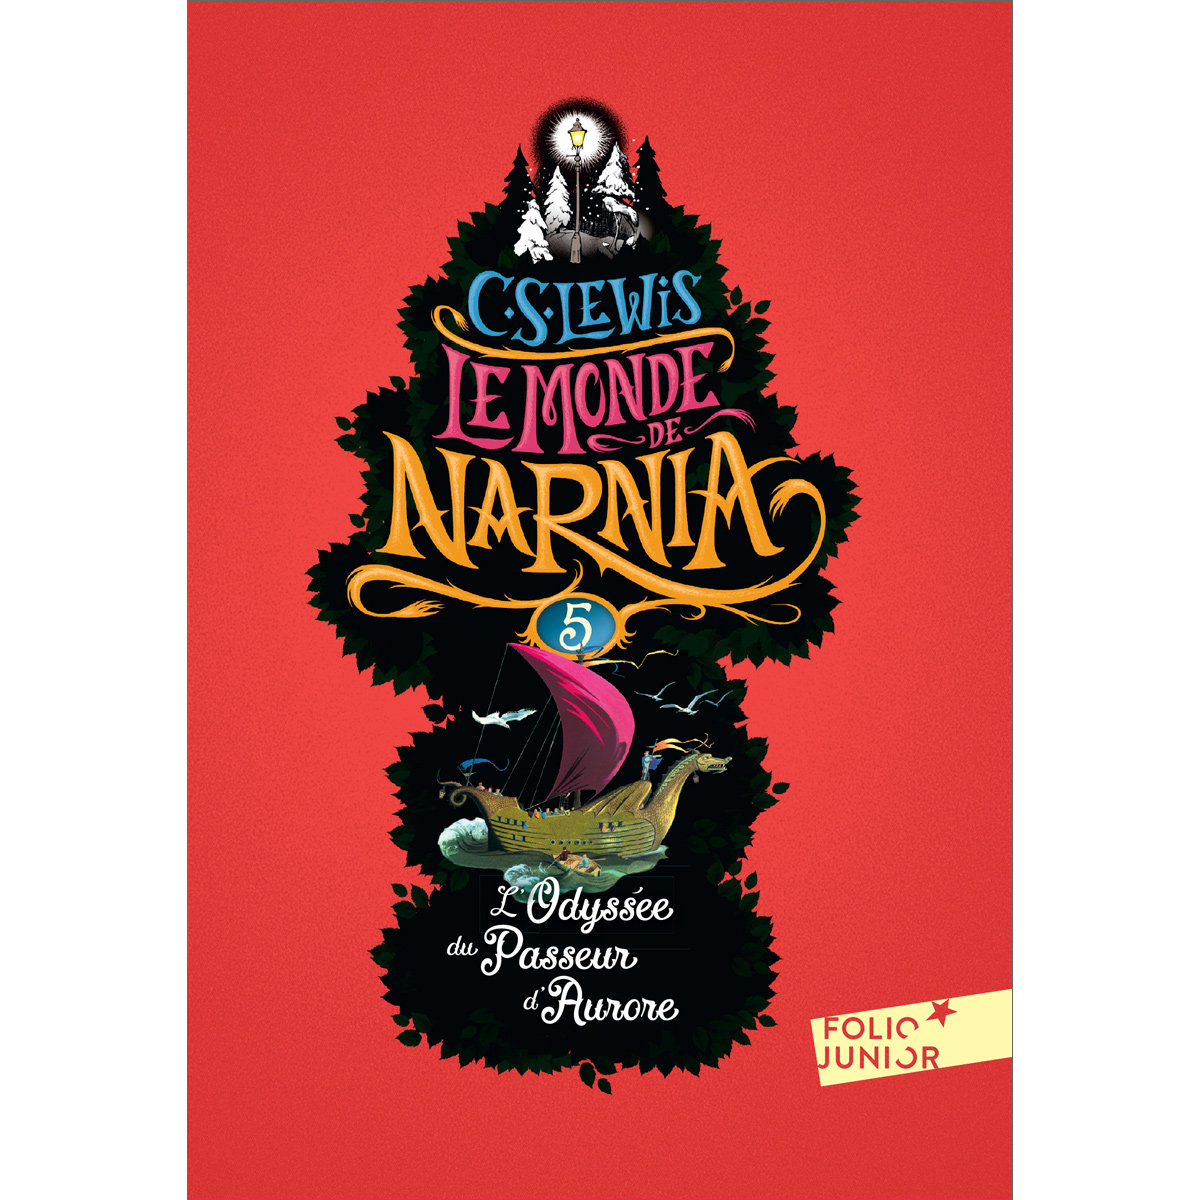 Le Monde de Narnia (5) - L'Odyssée du Passeur d'Aurore